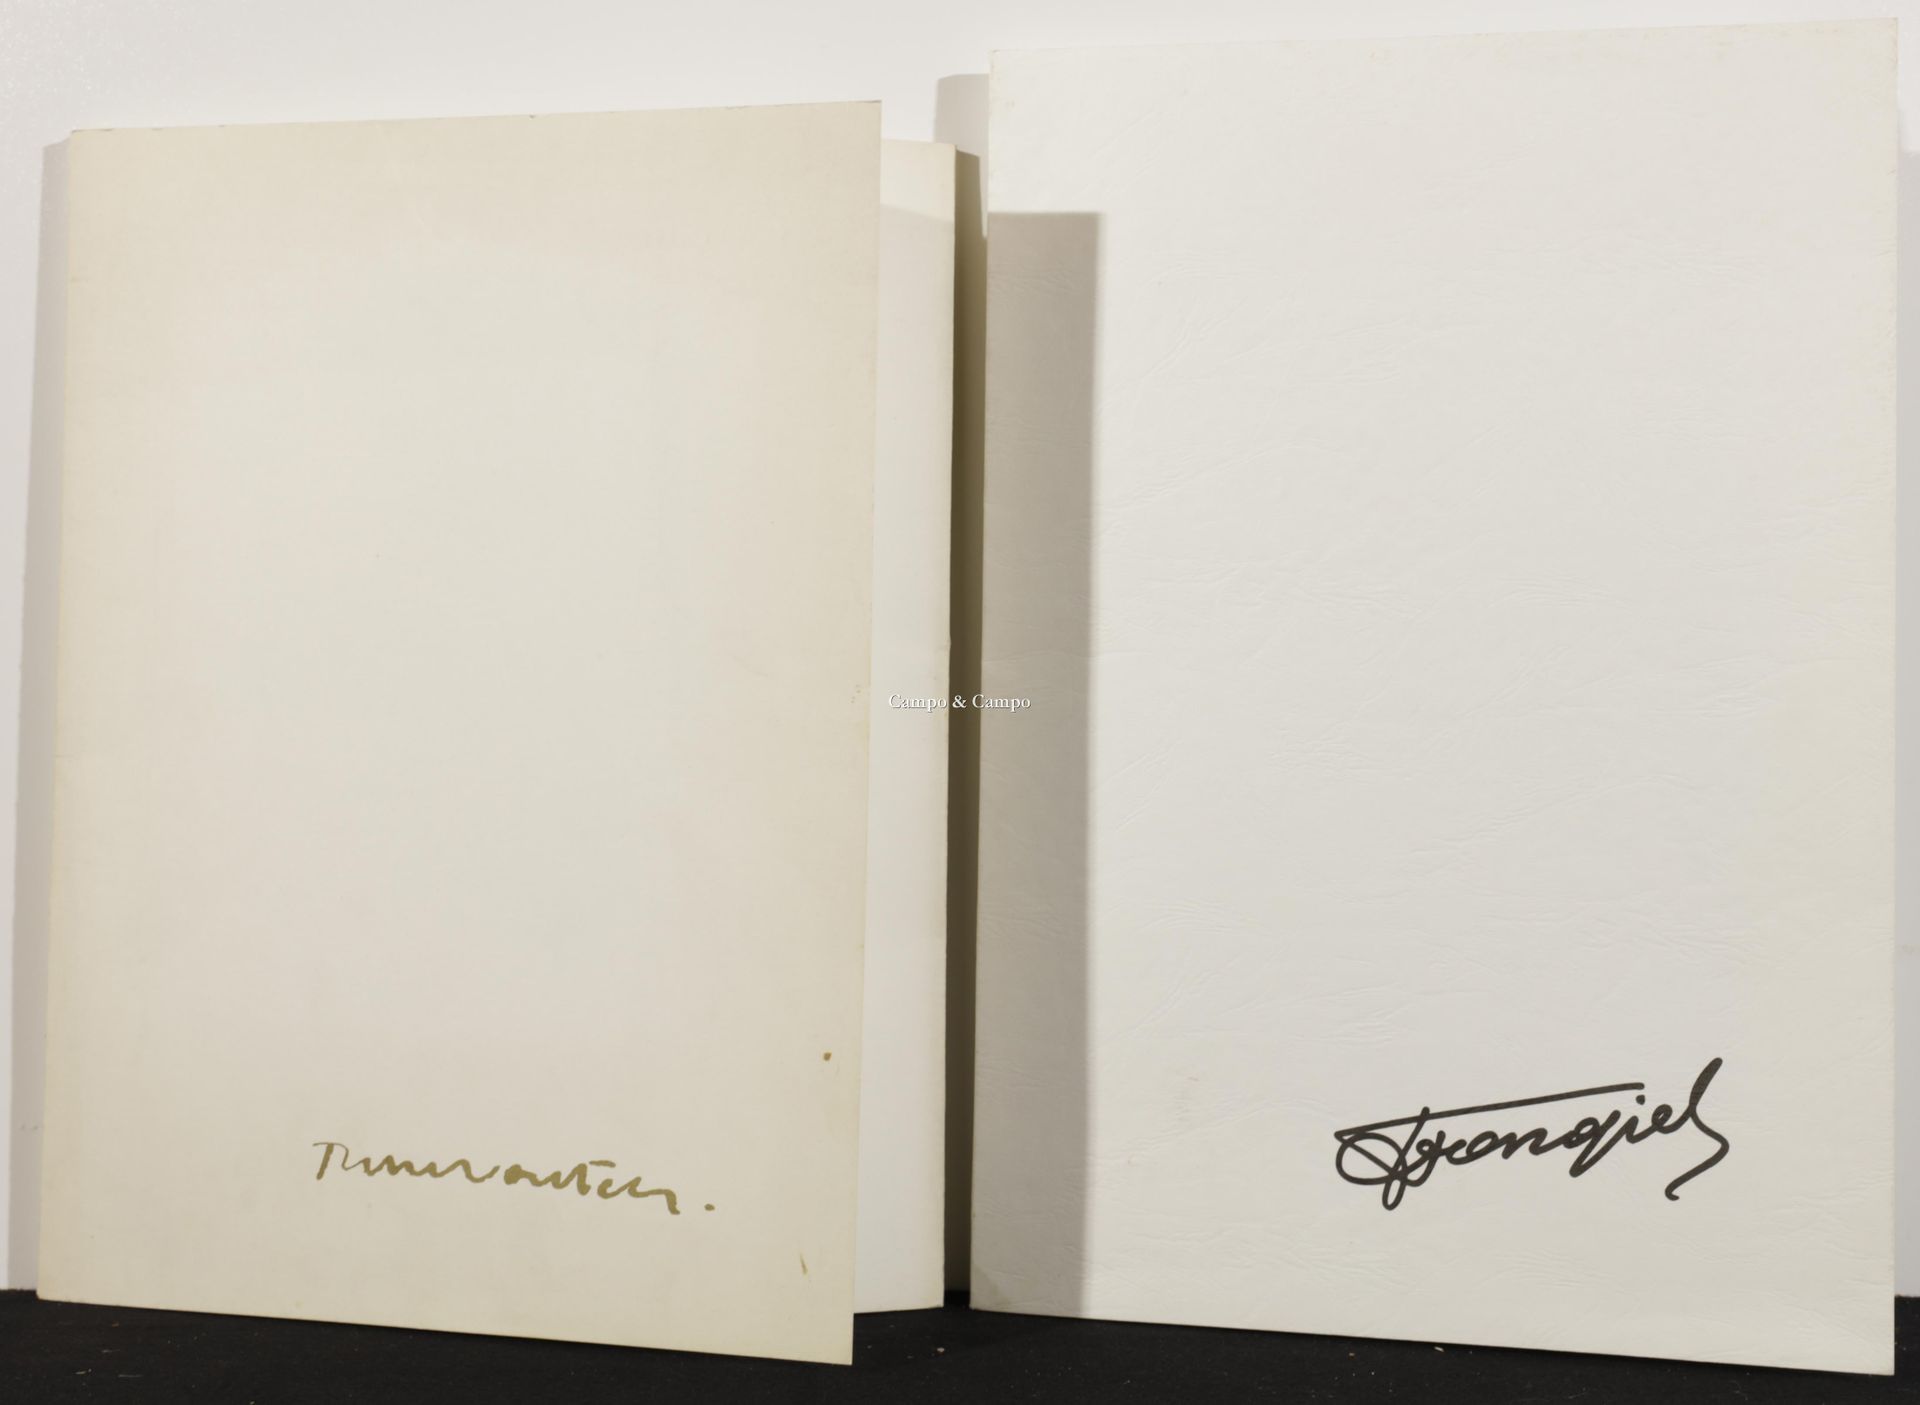 VAN GIEL FRANS + WOUTERS RIK 两份带插图的文件夹
一批两件艺术品的胶版印刷品